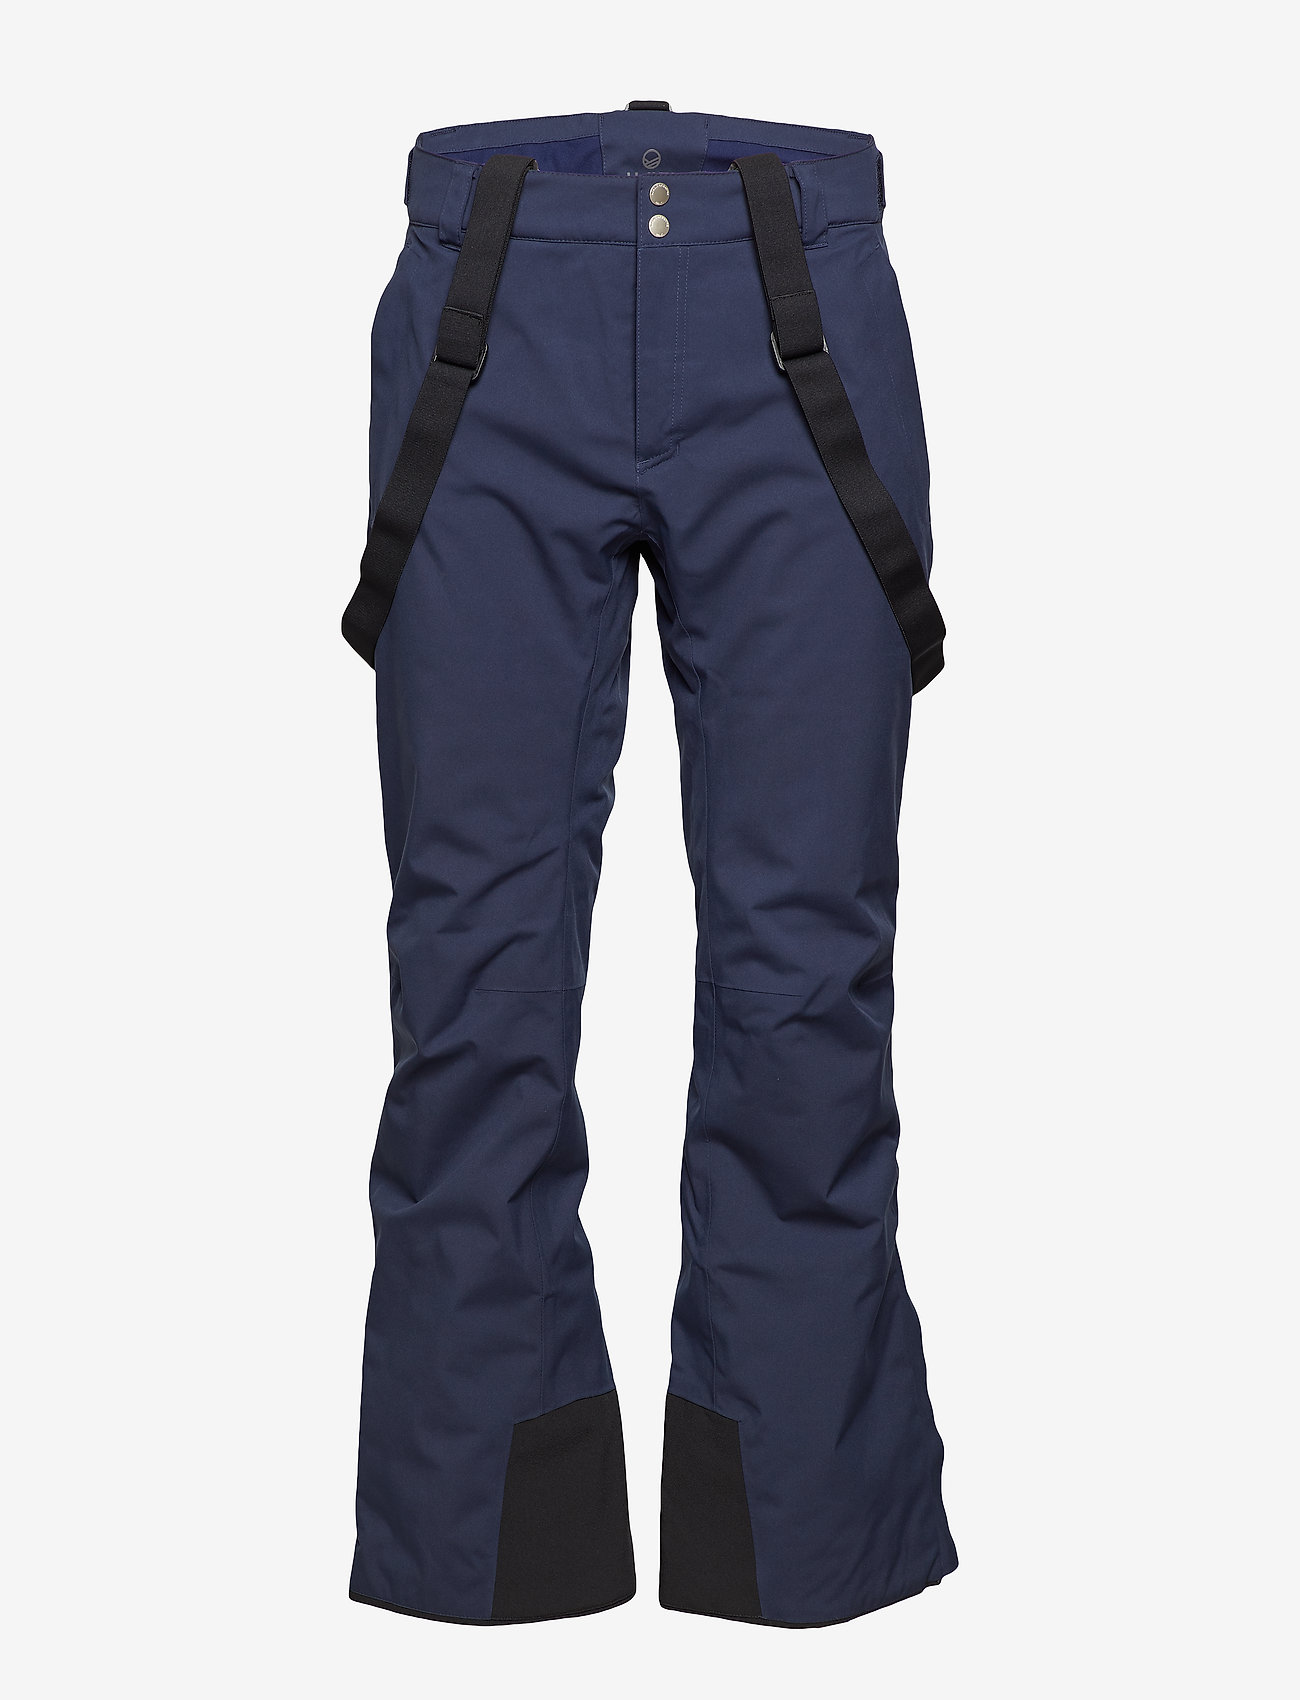 Halti - Puntti Men's DX Ski Pants - peacoat blue - 1